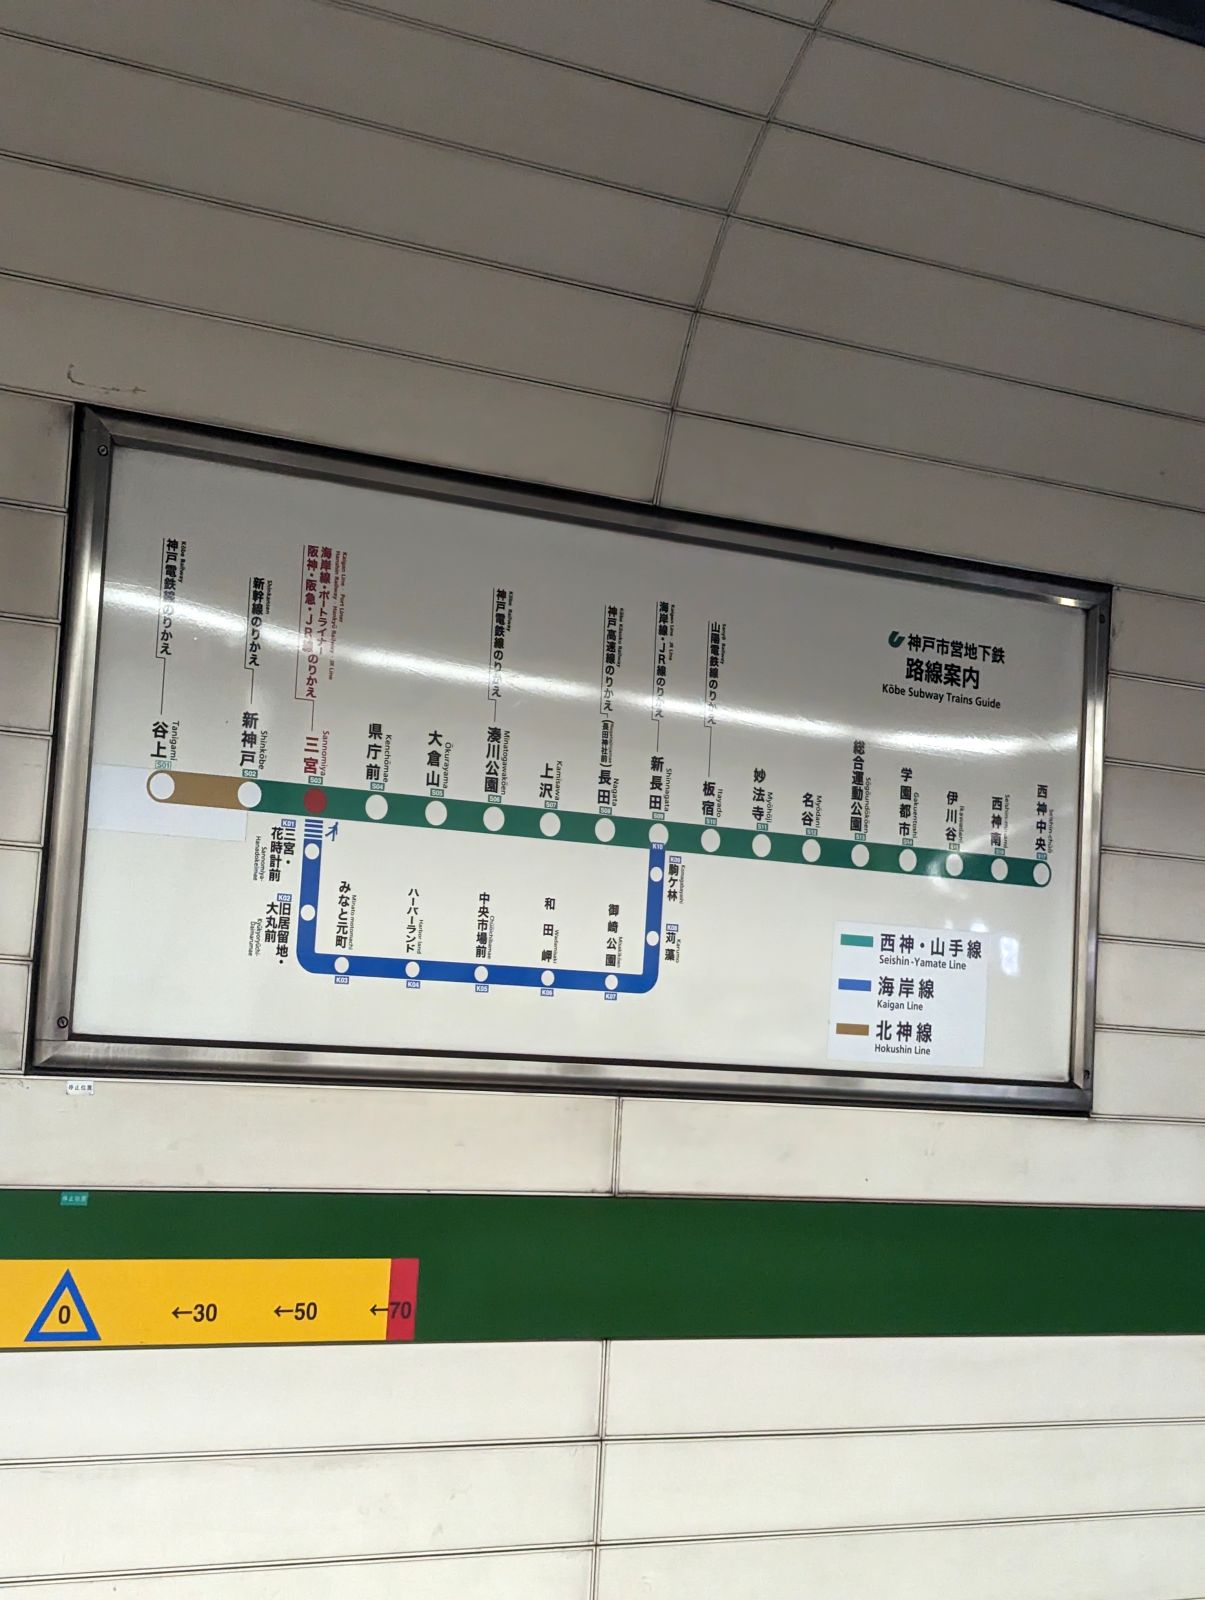 神戸市営地下鉄路線案内